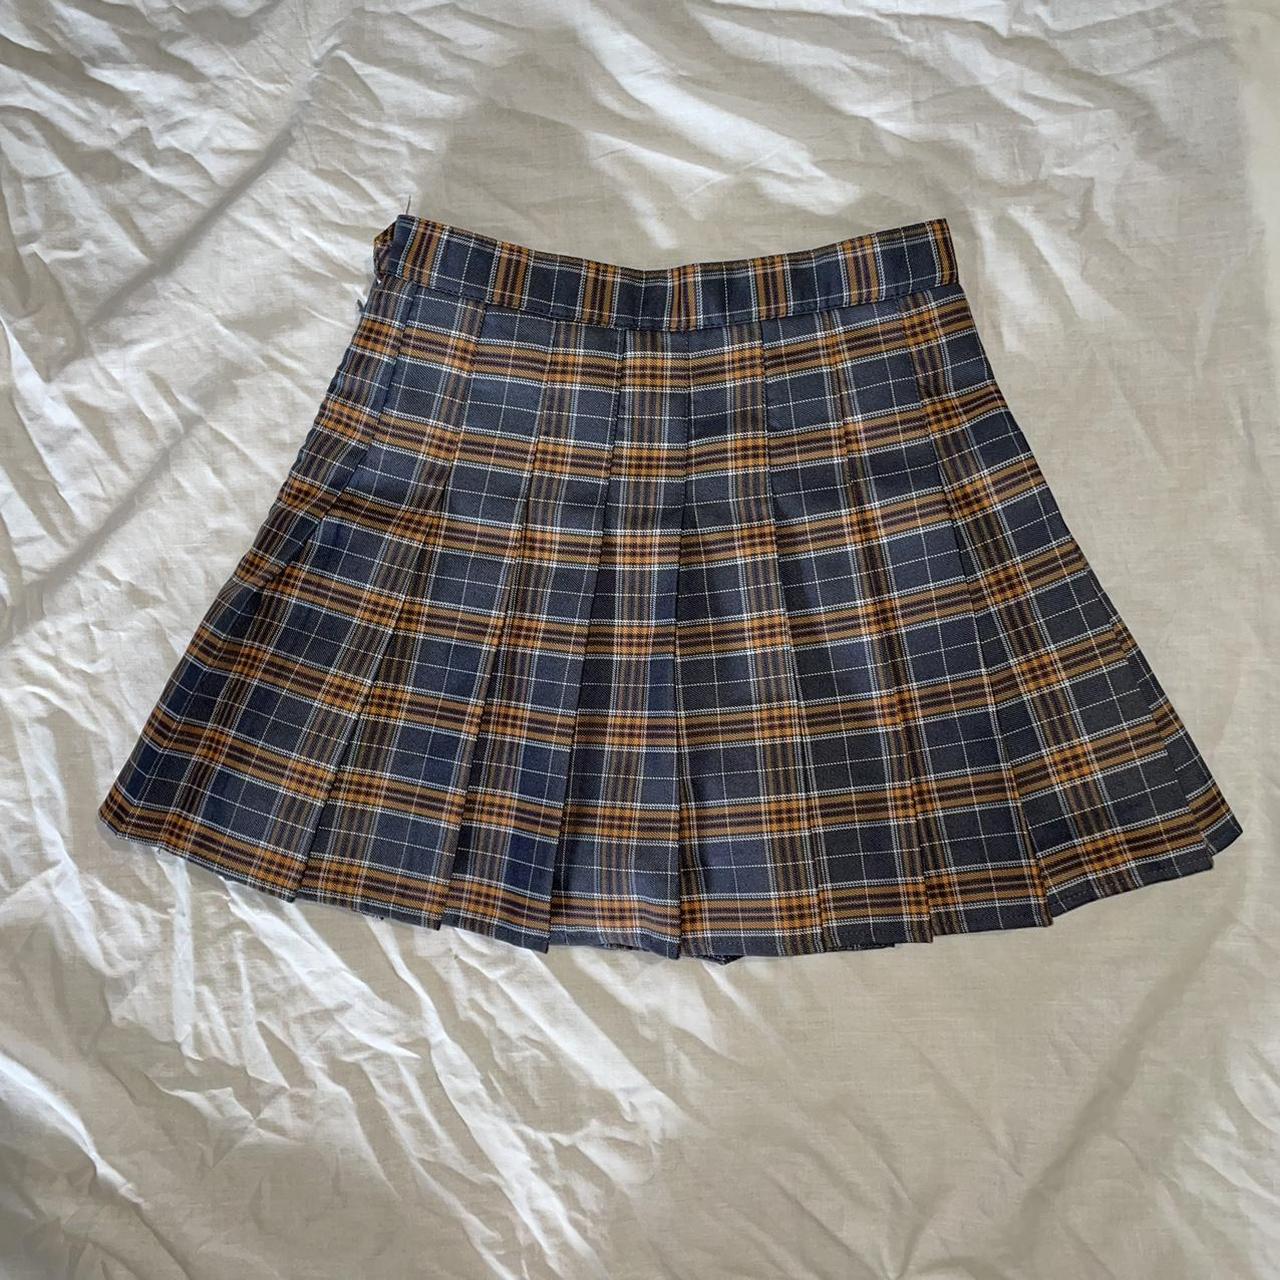 JK style tennis skirt Size Asian M (XS-S) $20 - Depop